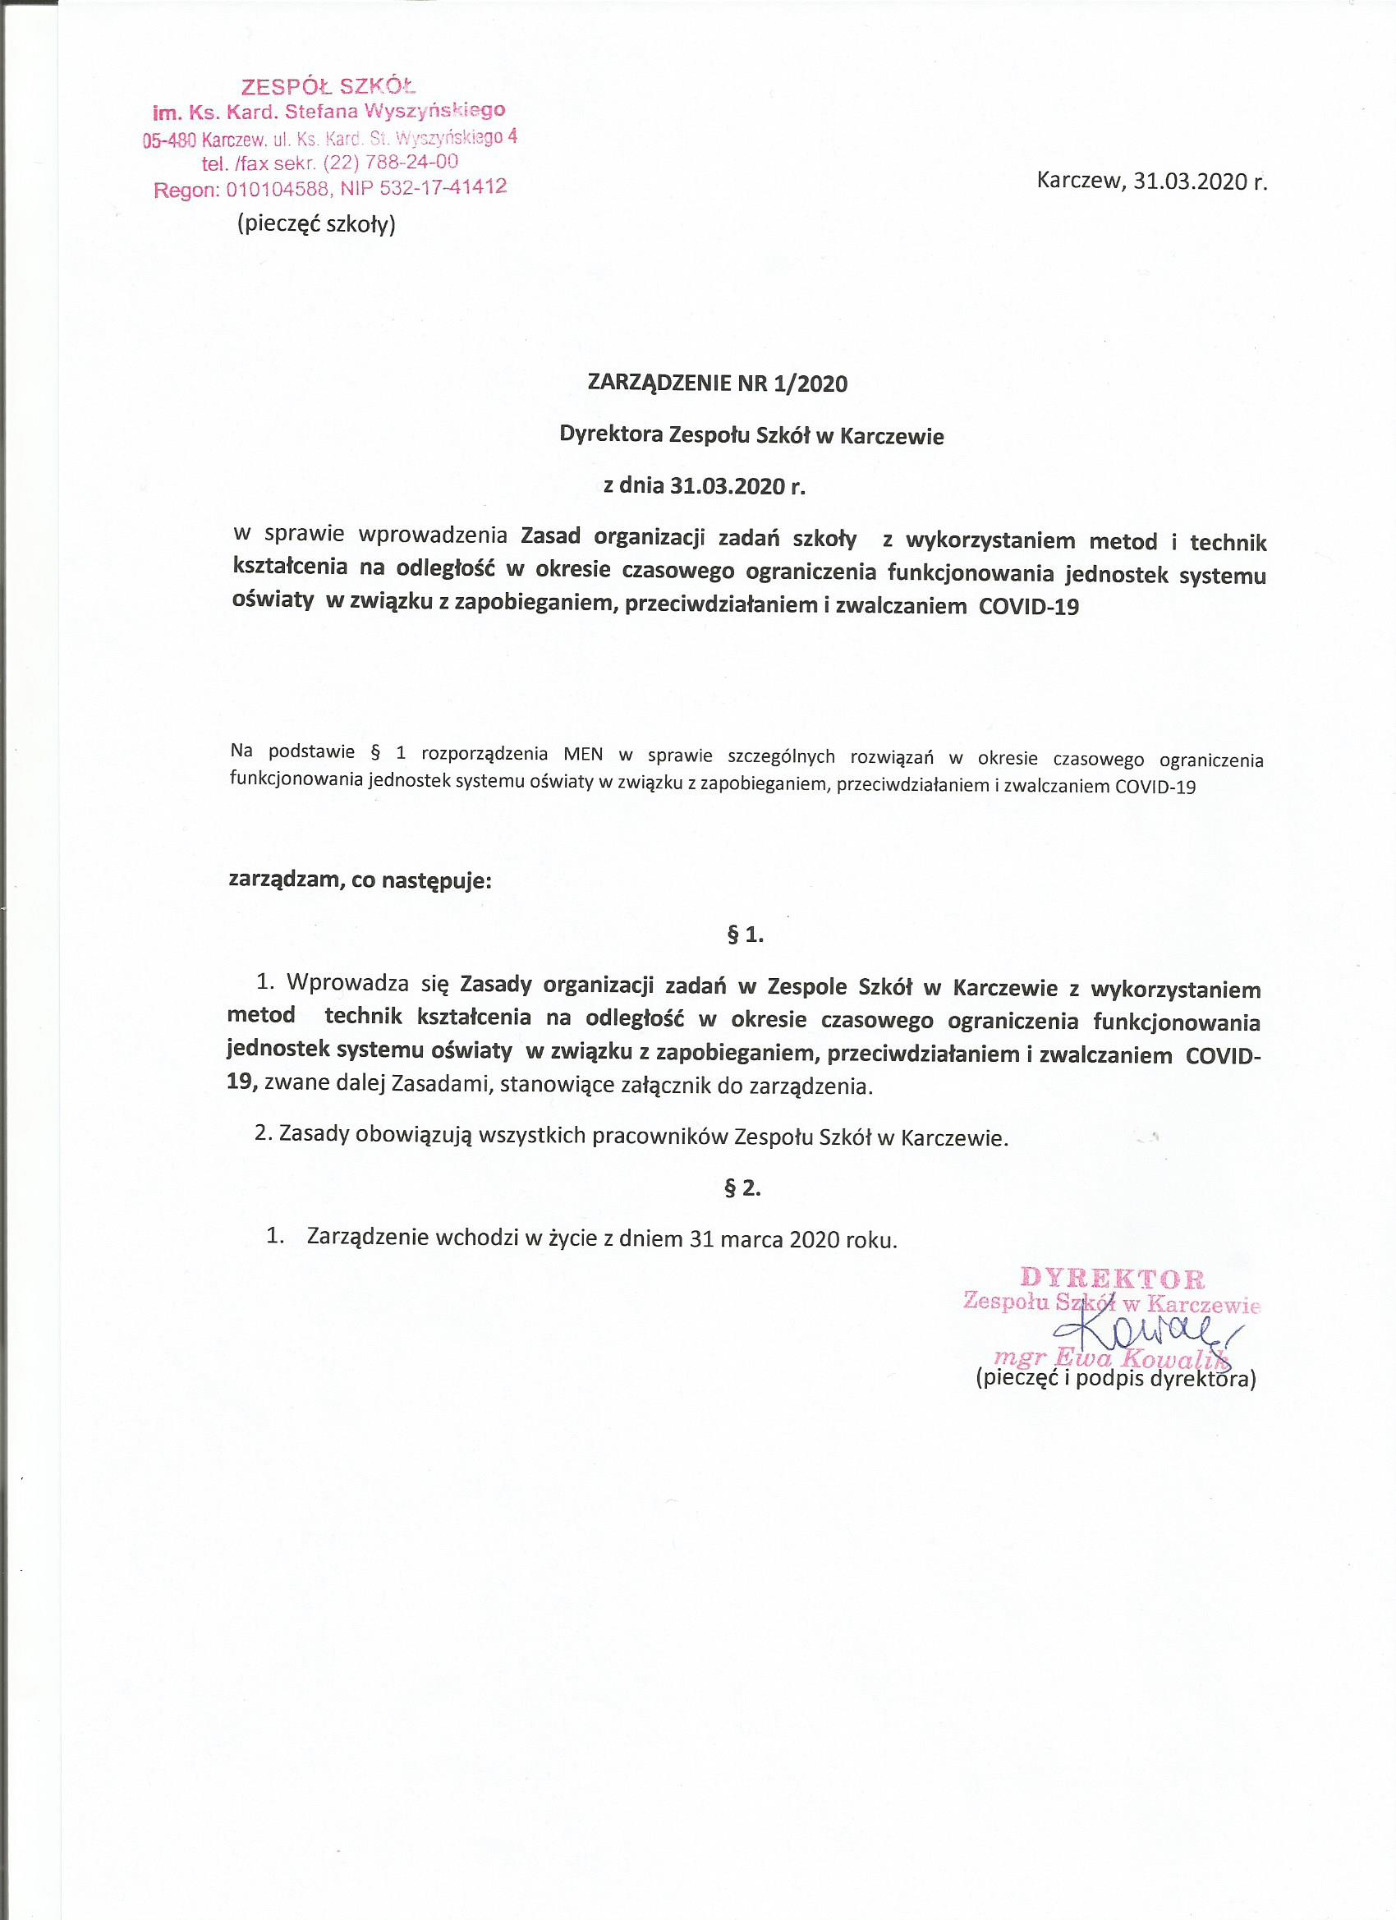 Zarządzenie NR 1/2020 Dyrektora ZS w Karczewie - Obrazek 1